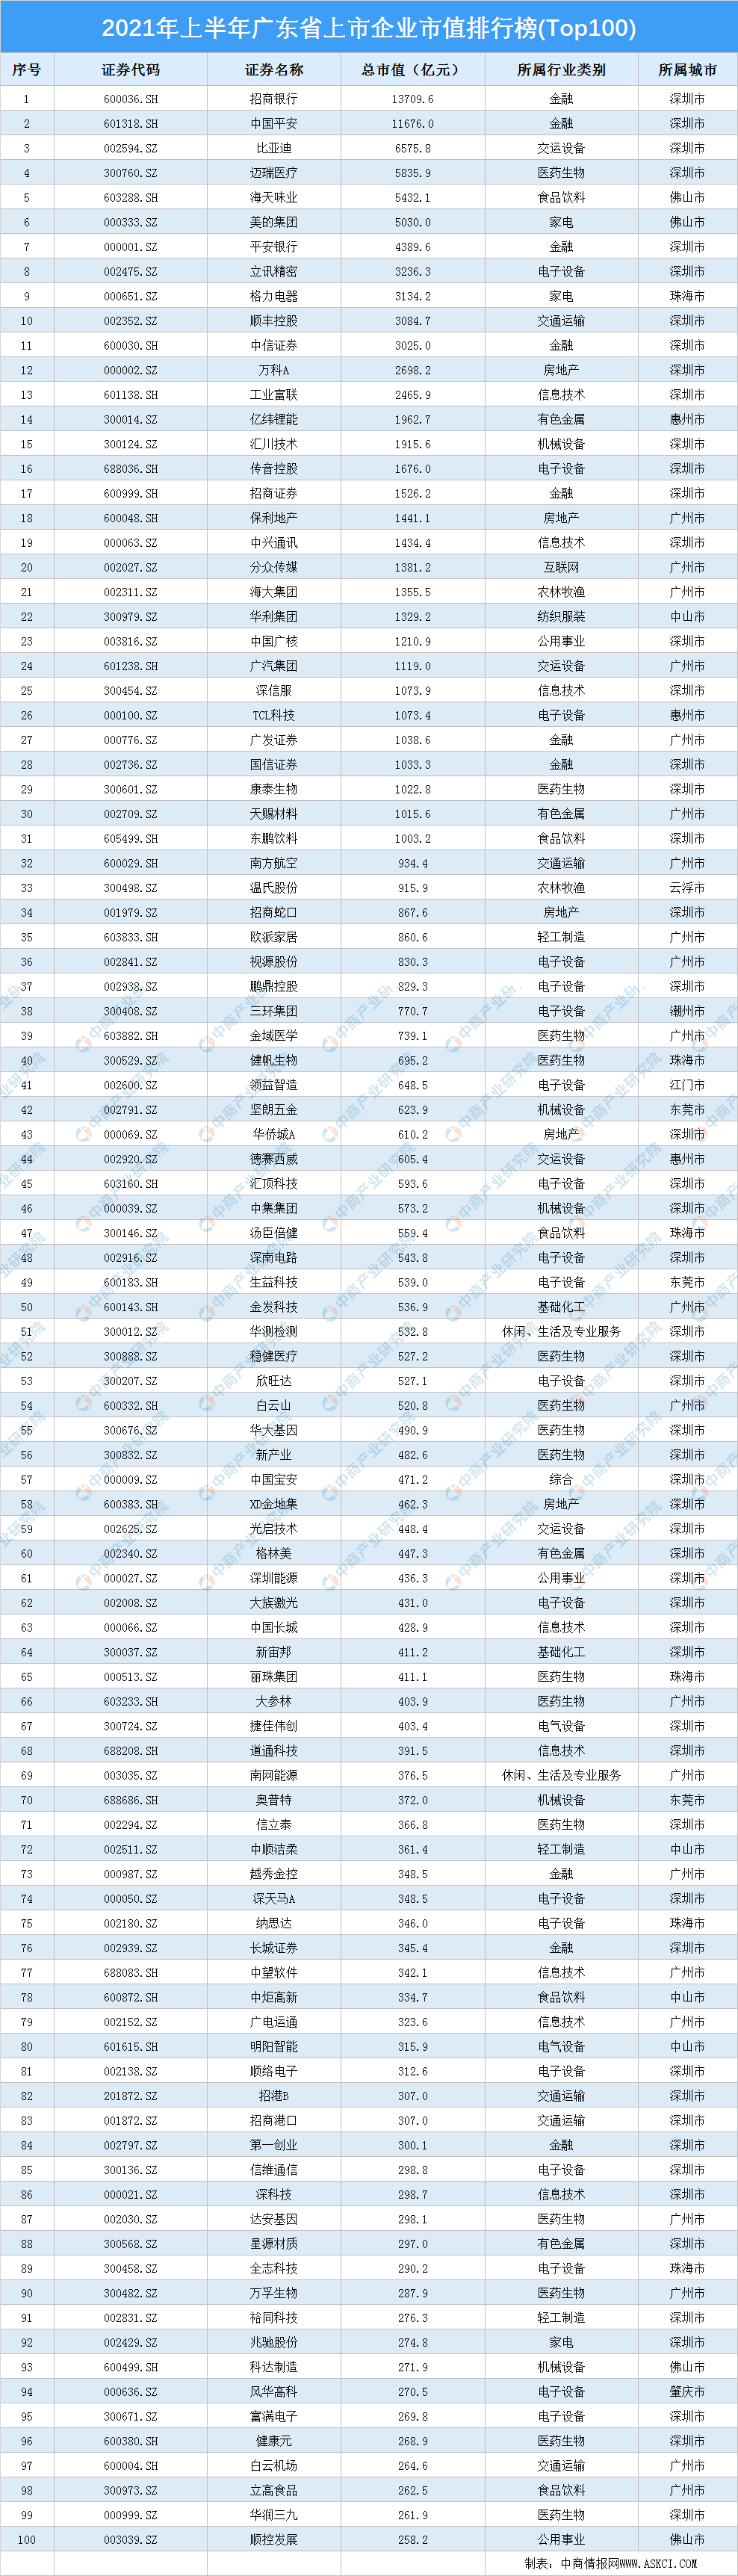 广东高考排行_2021年广东省内高校高考录取分数排名!第一被外客分校区拿下!